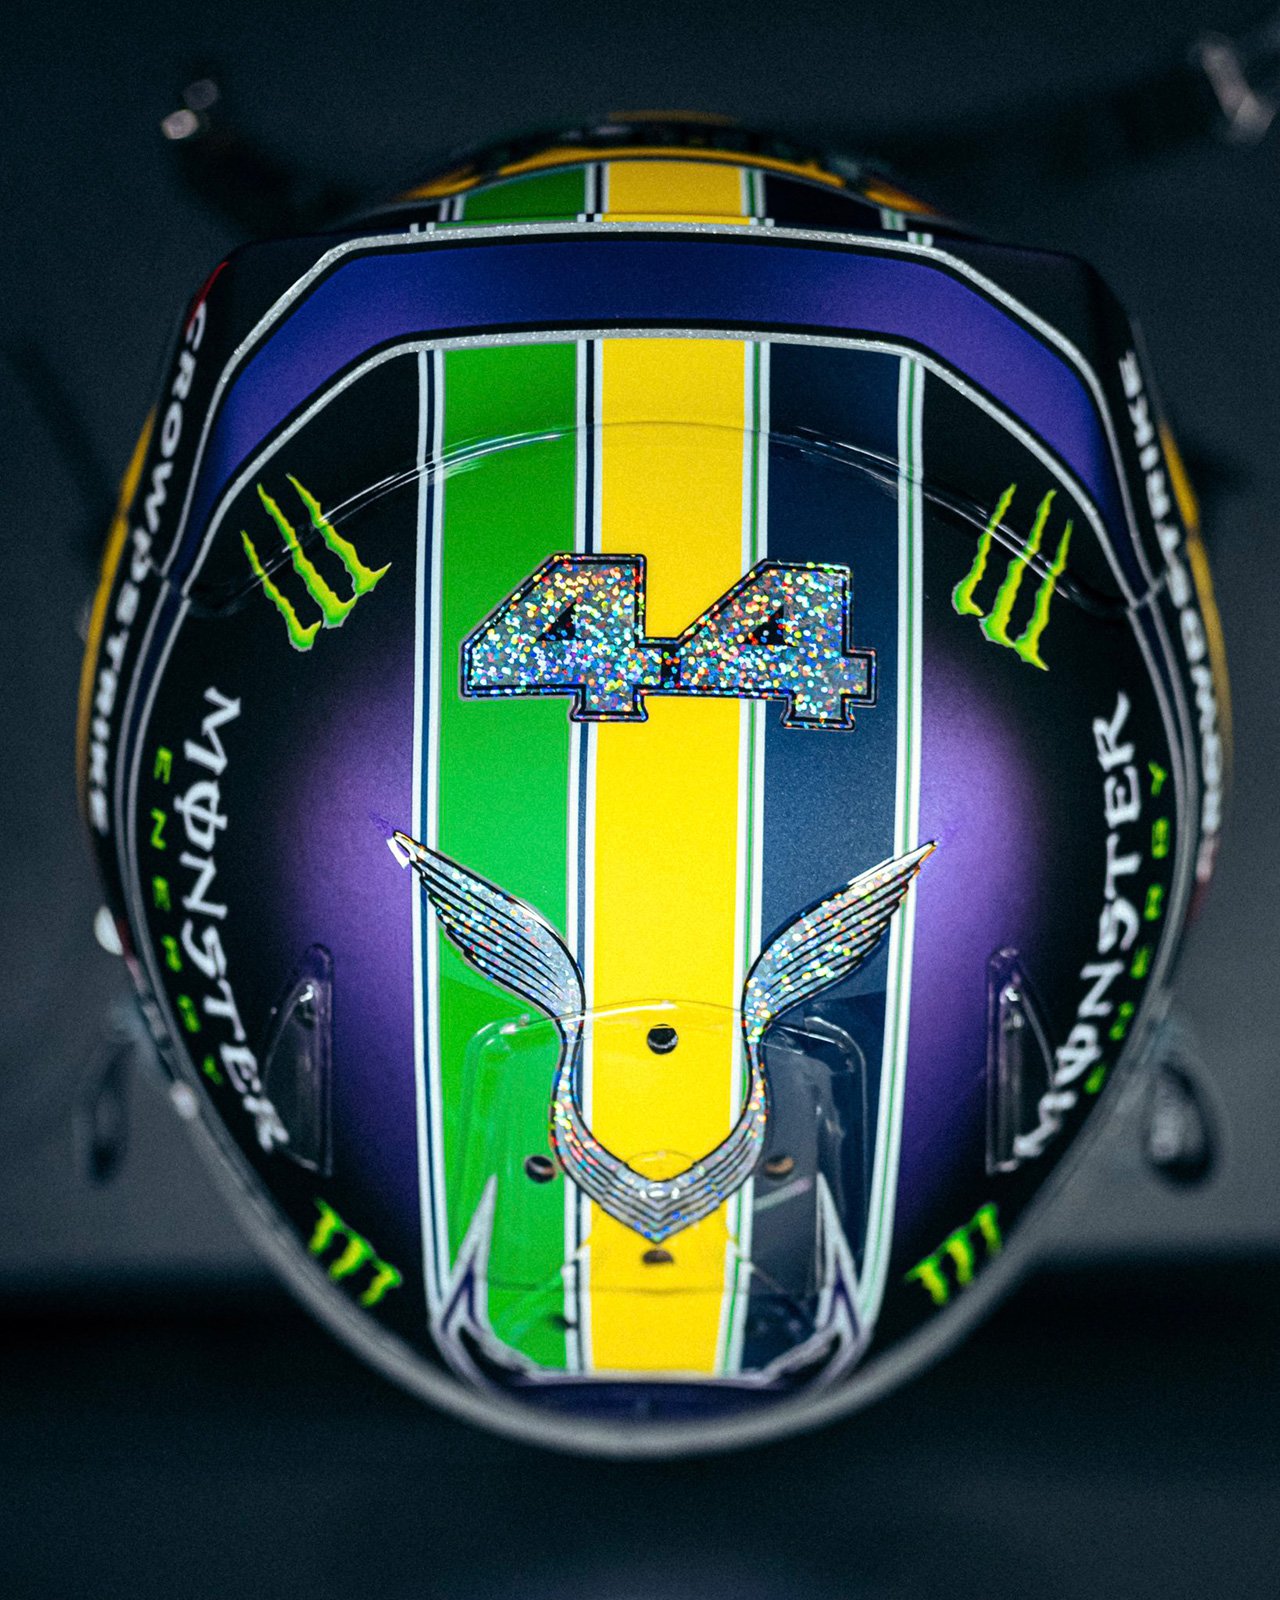 ルイス・ハミルトン 2021年 F1サンパウロGP ヘルメット アイルトン・セナ仕様